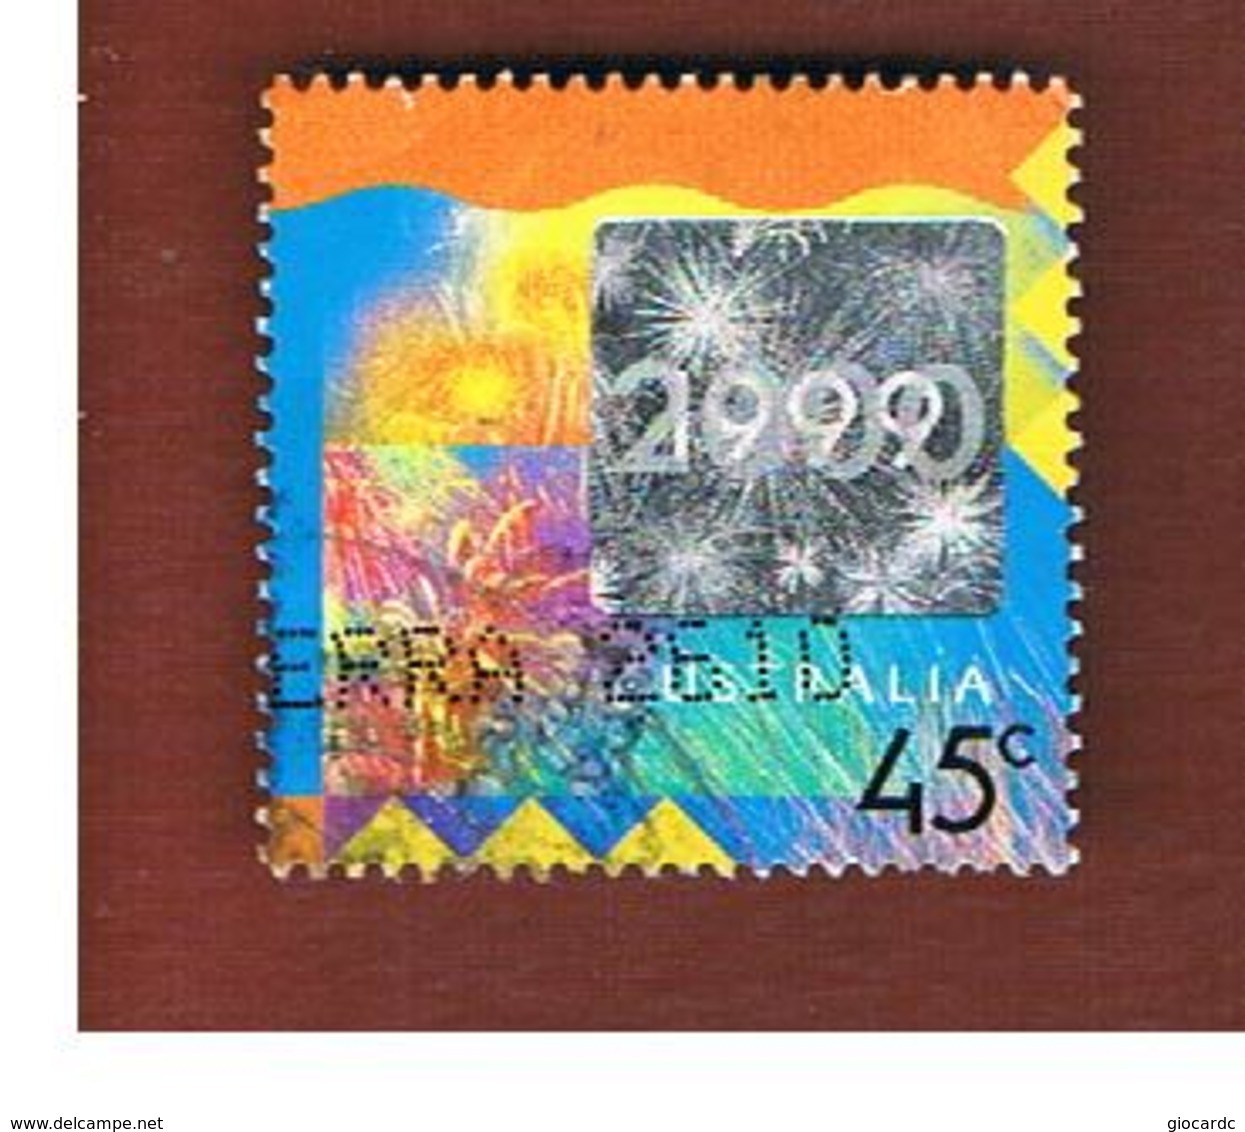 AUSTRALIA  -  SG 1921  -      1999 HOLOGRAM     -       USED - Used Stamps